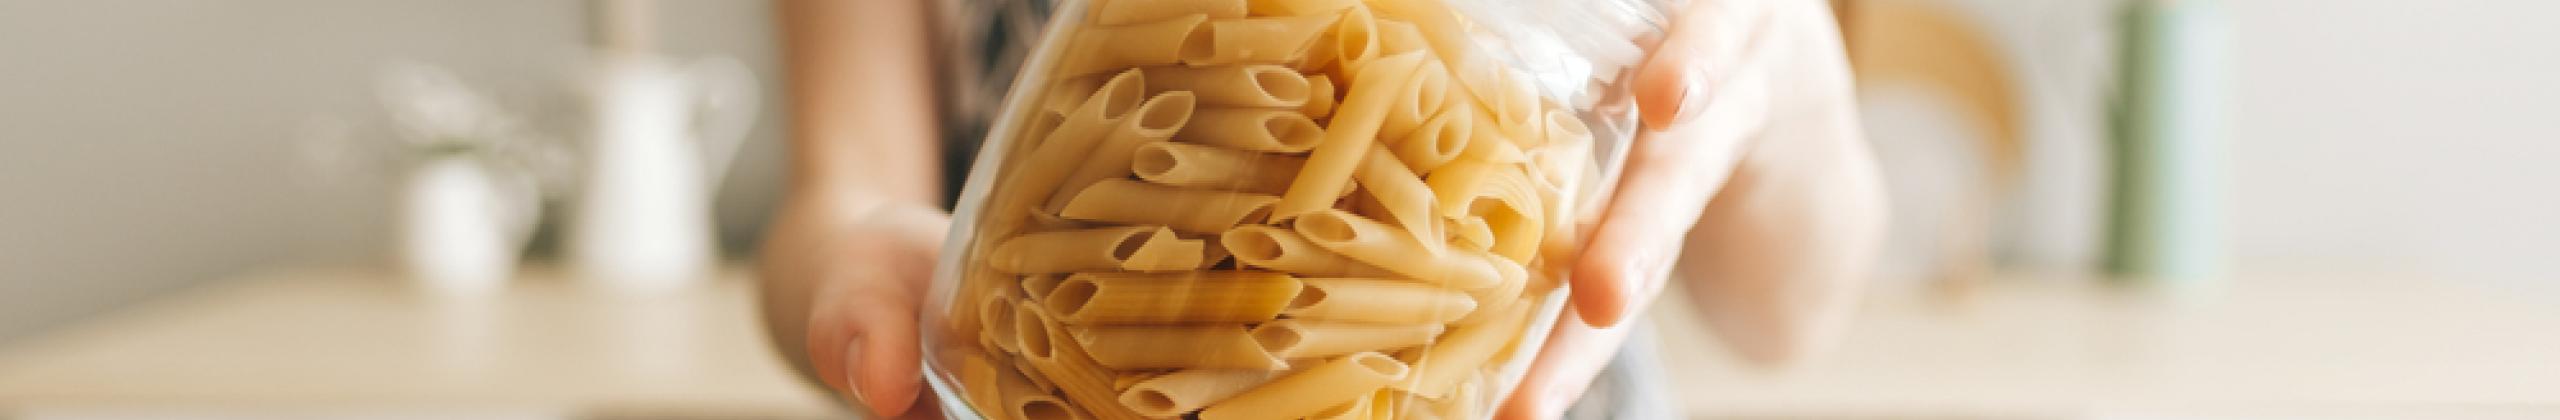 Is pasta gezond?